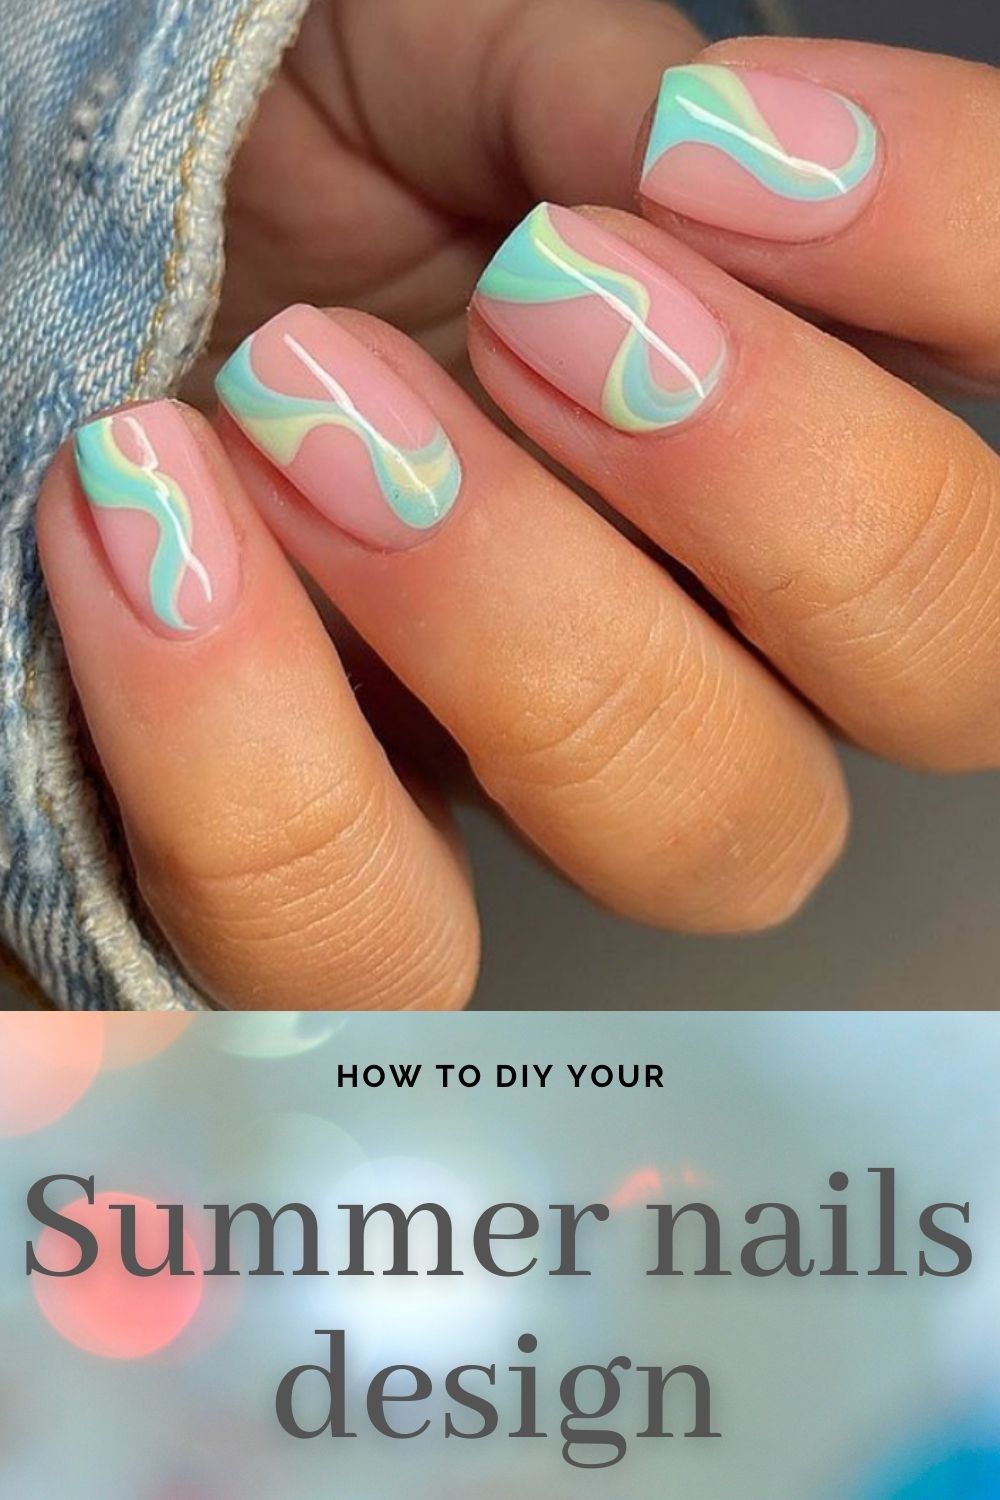 Summer nails 2021 Cute acrylic nail design with short nail shape!